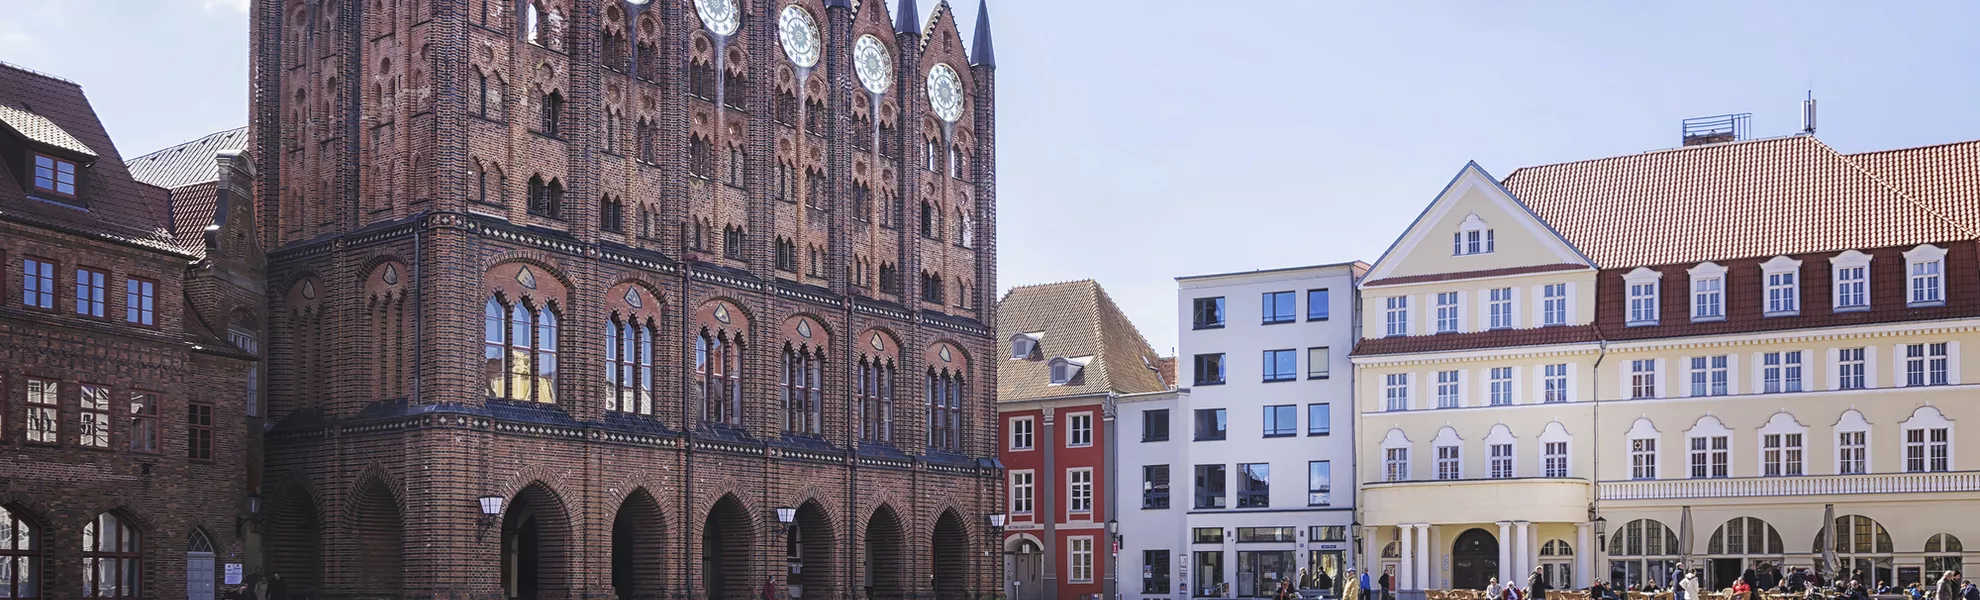 Rathaus, Stralsund - © shutterstock_271691900